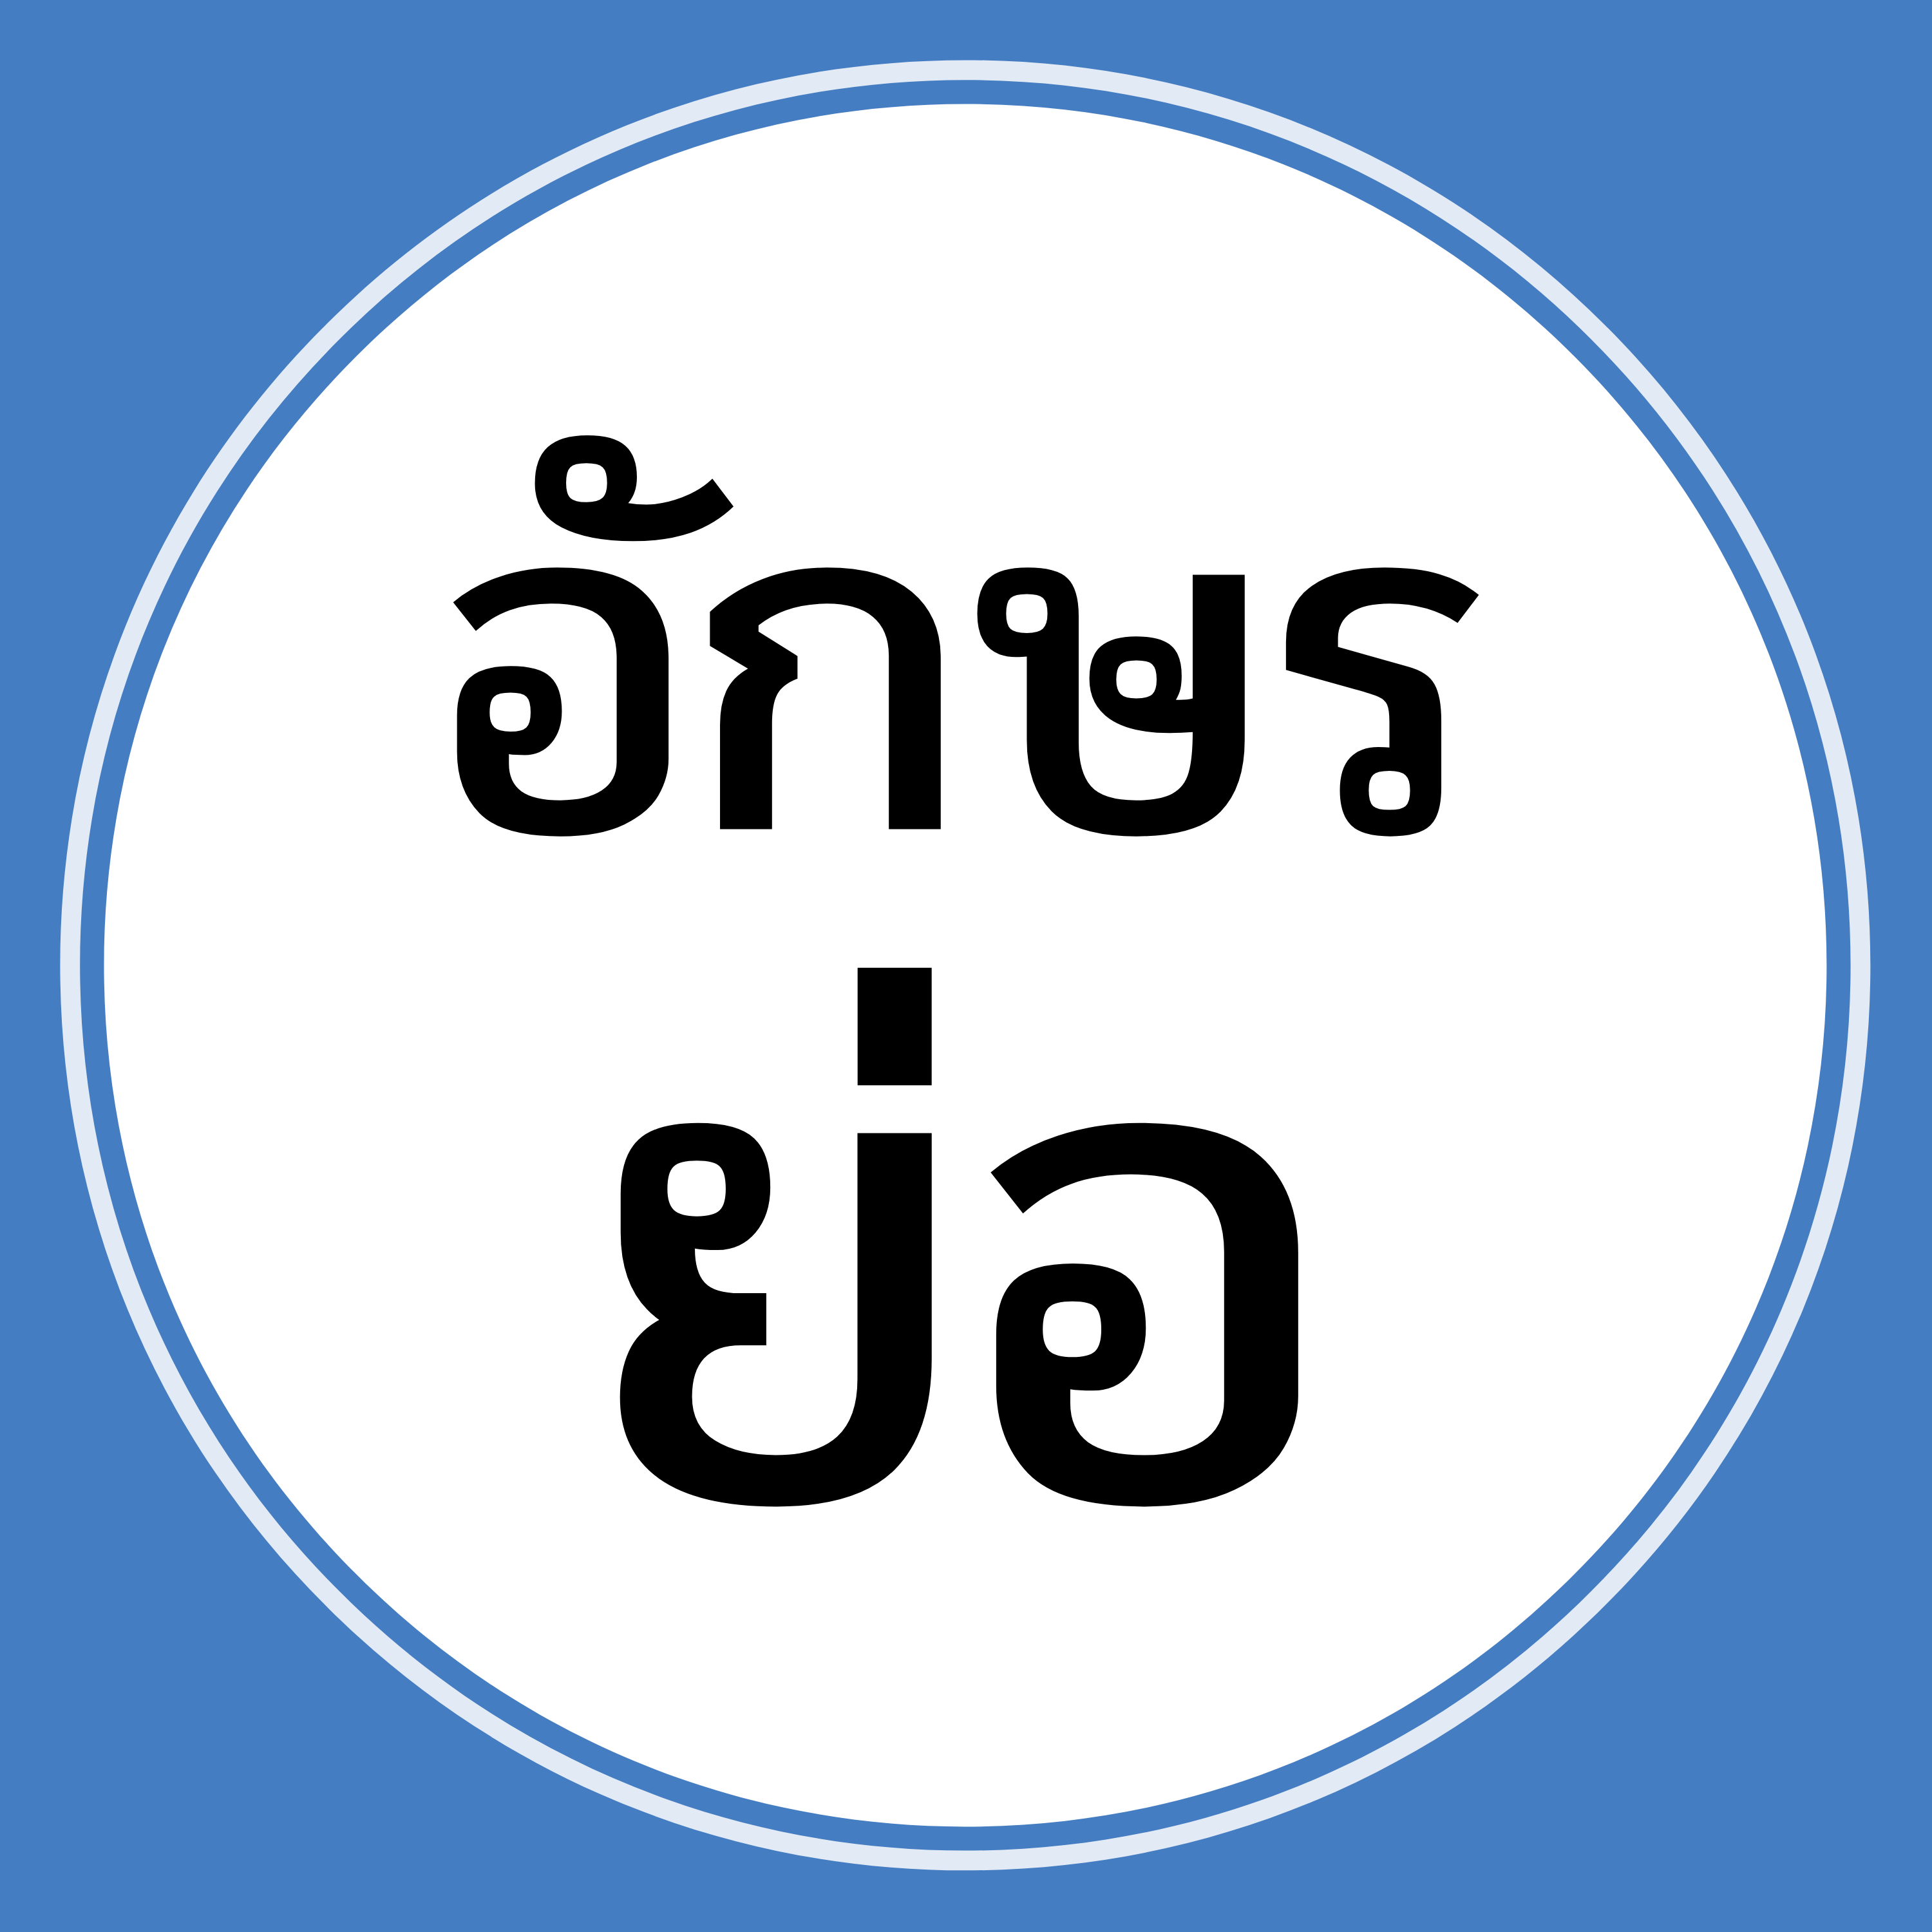 รวมอักษรย่อ คำย่อ ชื่อย่อ ในภาษาไทย ที่ใช้บ่อยในชีวิตประจำวันประเทศไทยของเรามีตัวย่อ คำย่อ อักษรย่อ ชื่อย่อ และคำสั้น ๆ เยอะมาก เช่น ส.ส. = สมาชิกสภาผู้แทนราษฎร รพ. = โรงพยาบาล ททท. = การท่องเที่ยวแห่งประเทศไทย